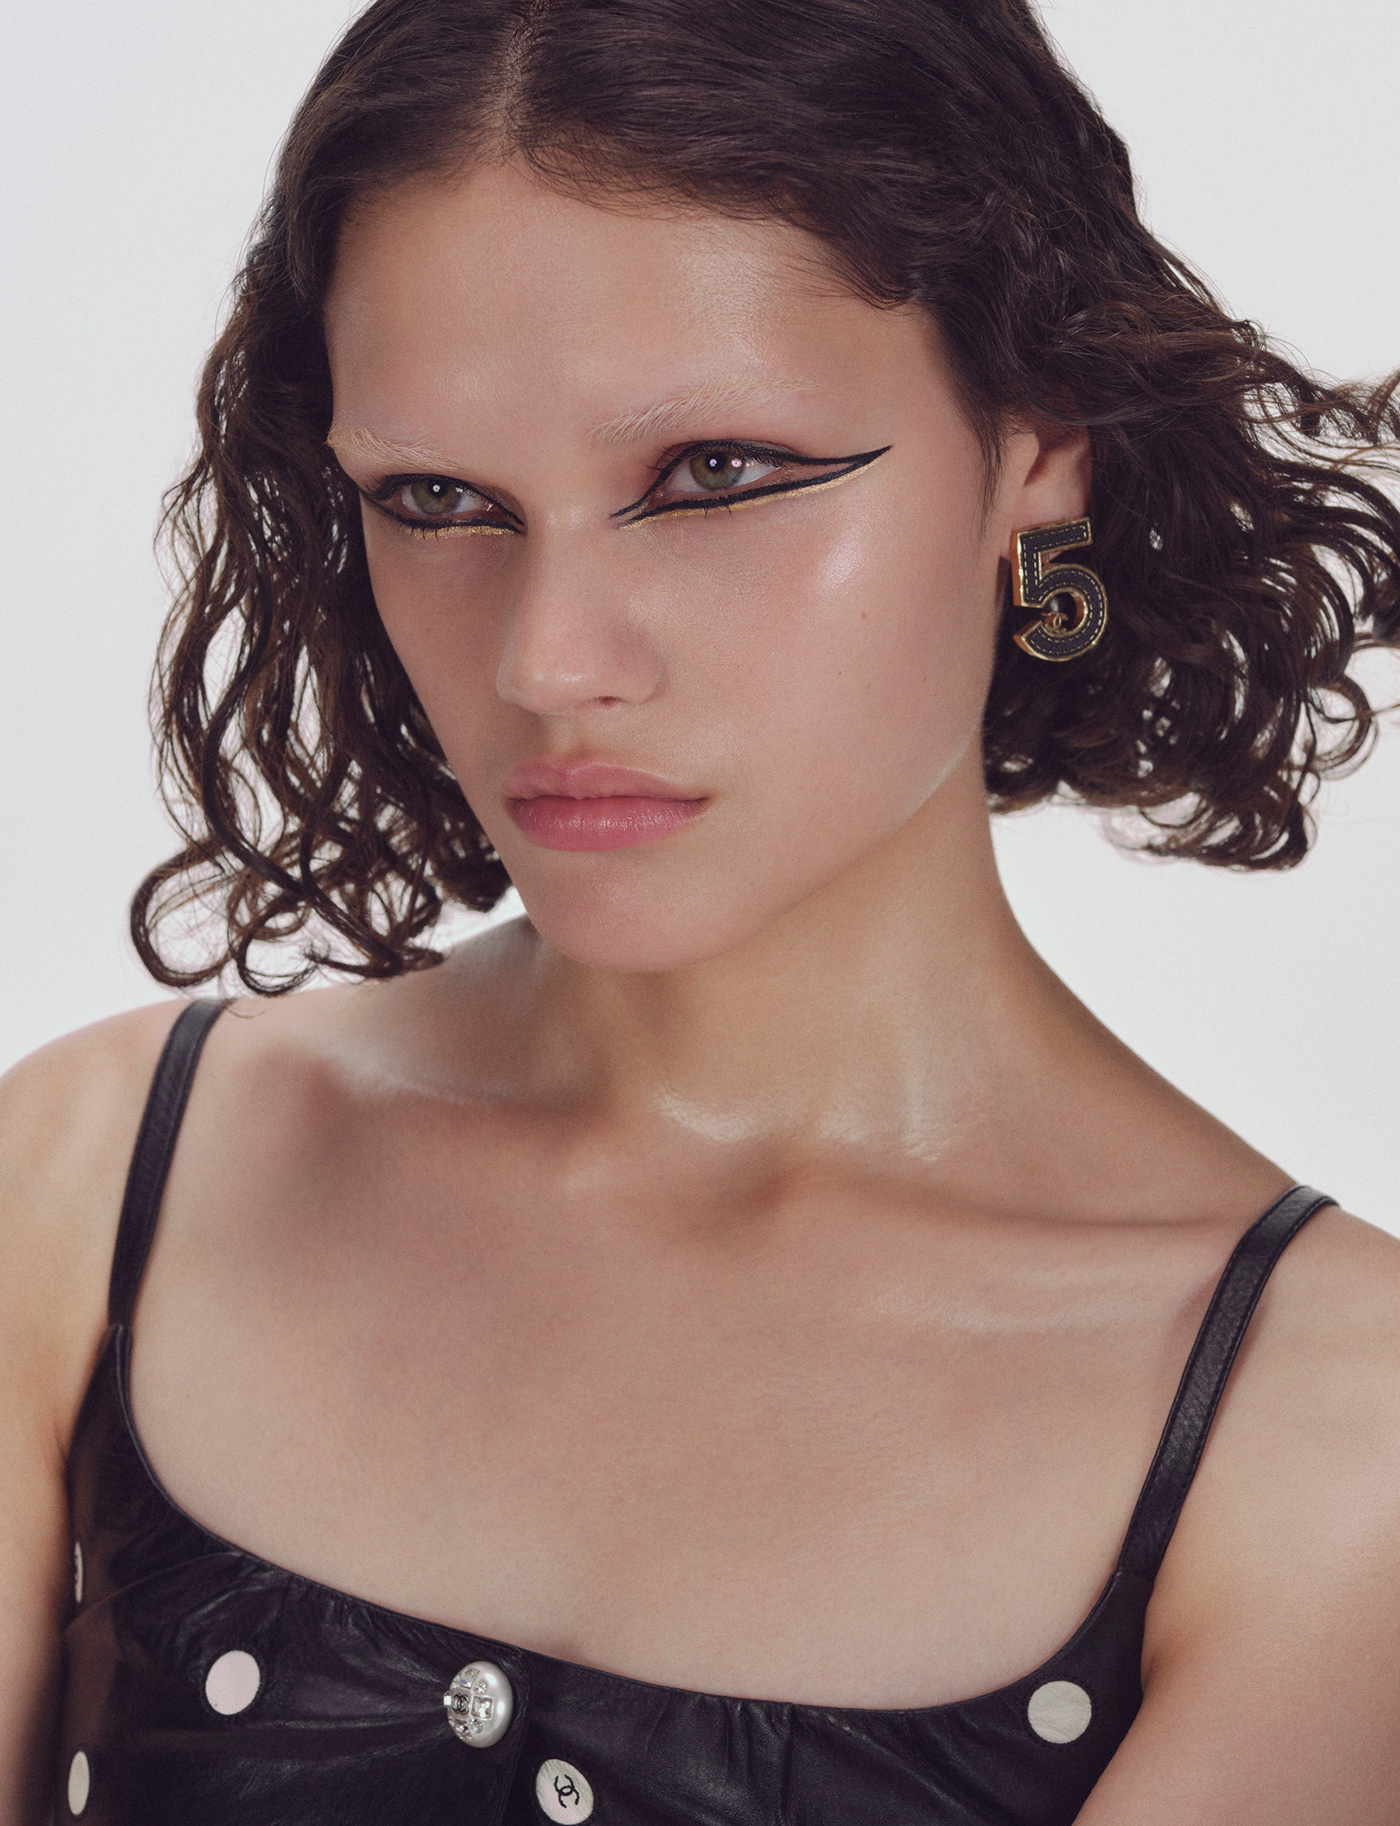 beauty editoial lightroom makeup model montage photoshoot portrait retouch